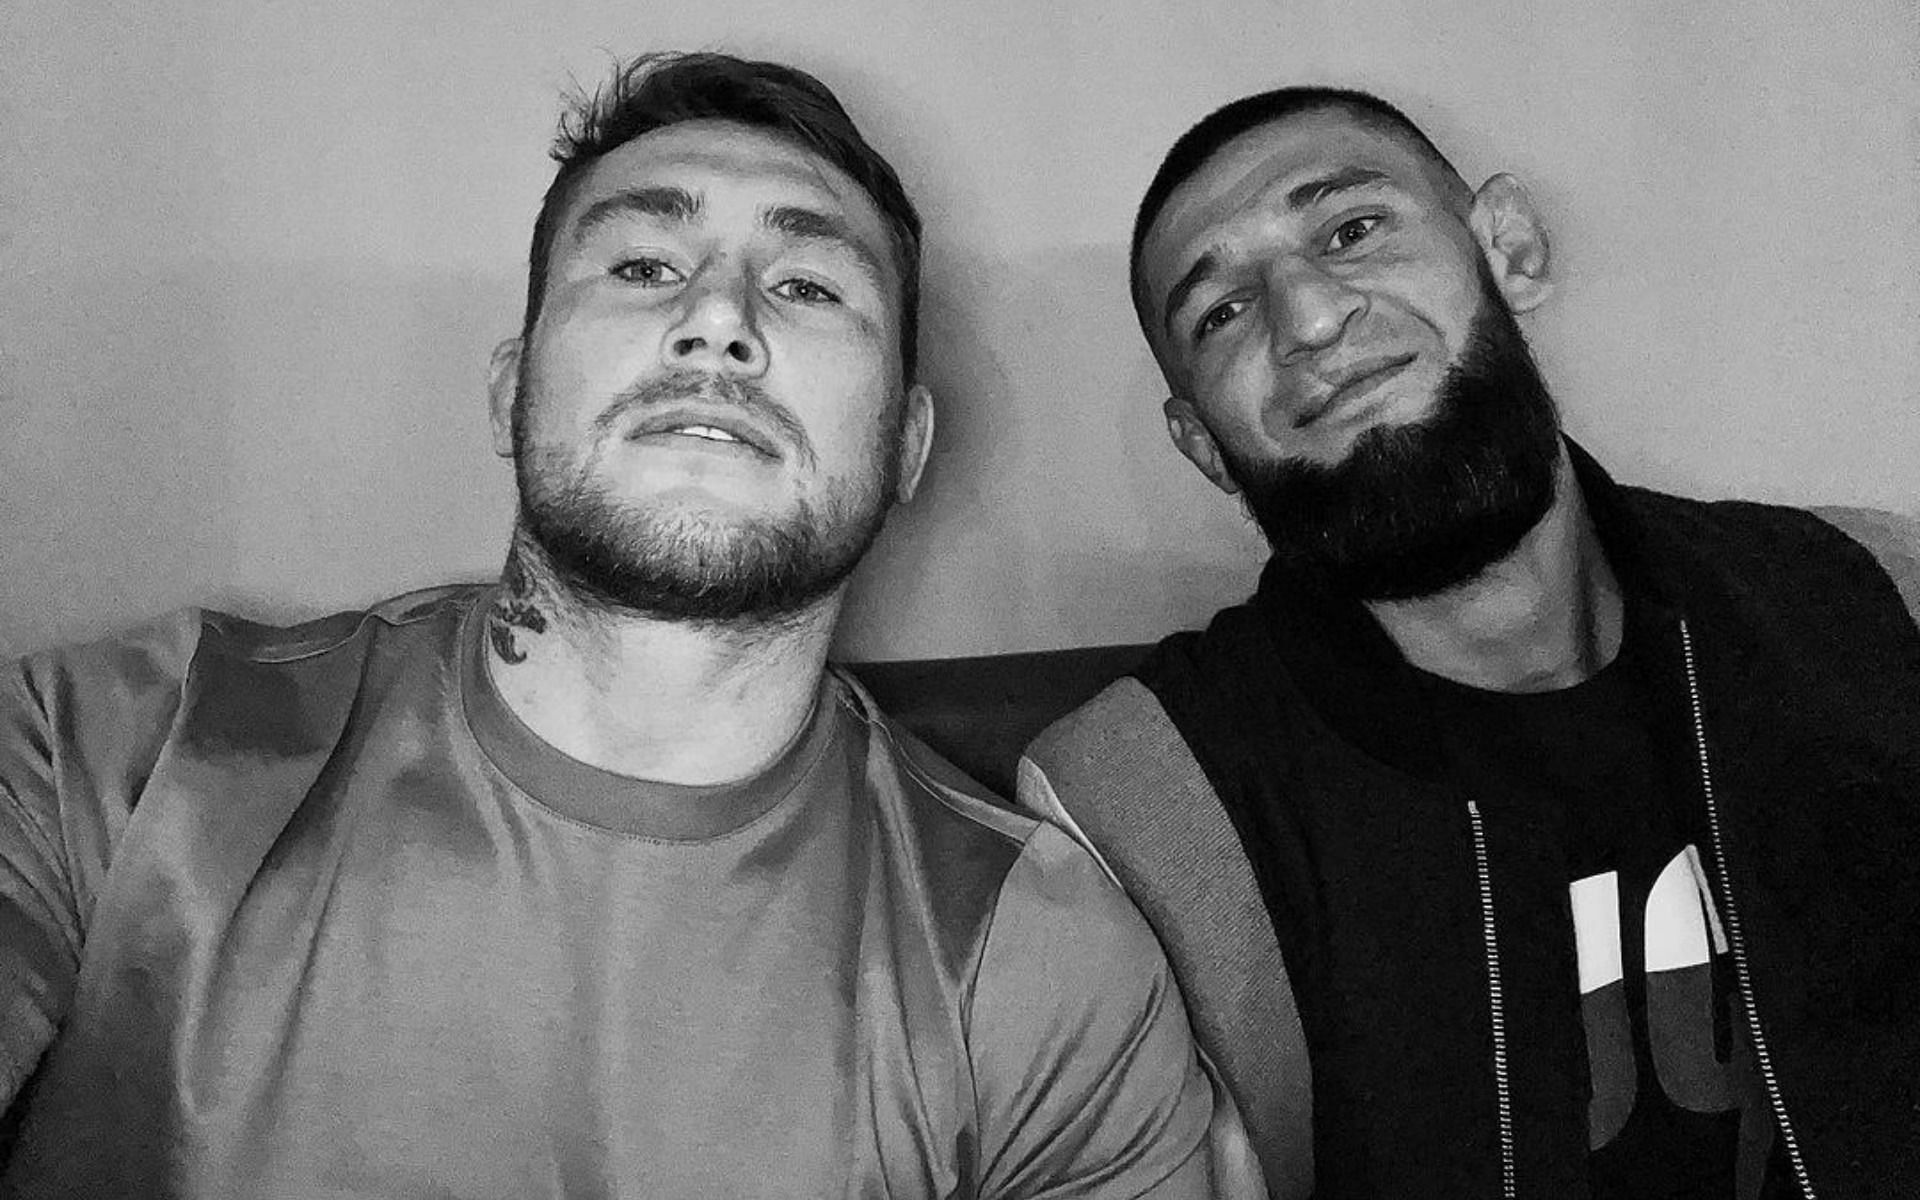 Darren Till (left) and Khamzat Chimaev (right) [Image Credit: via @darrentill123 on Instagram]